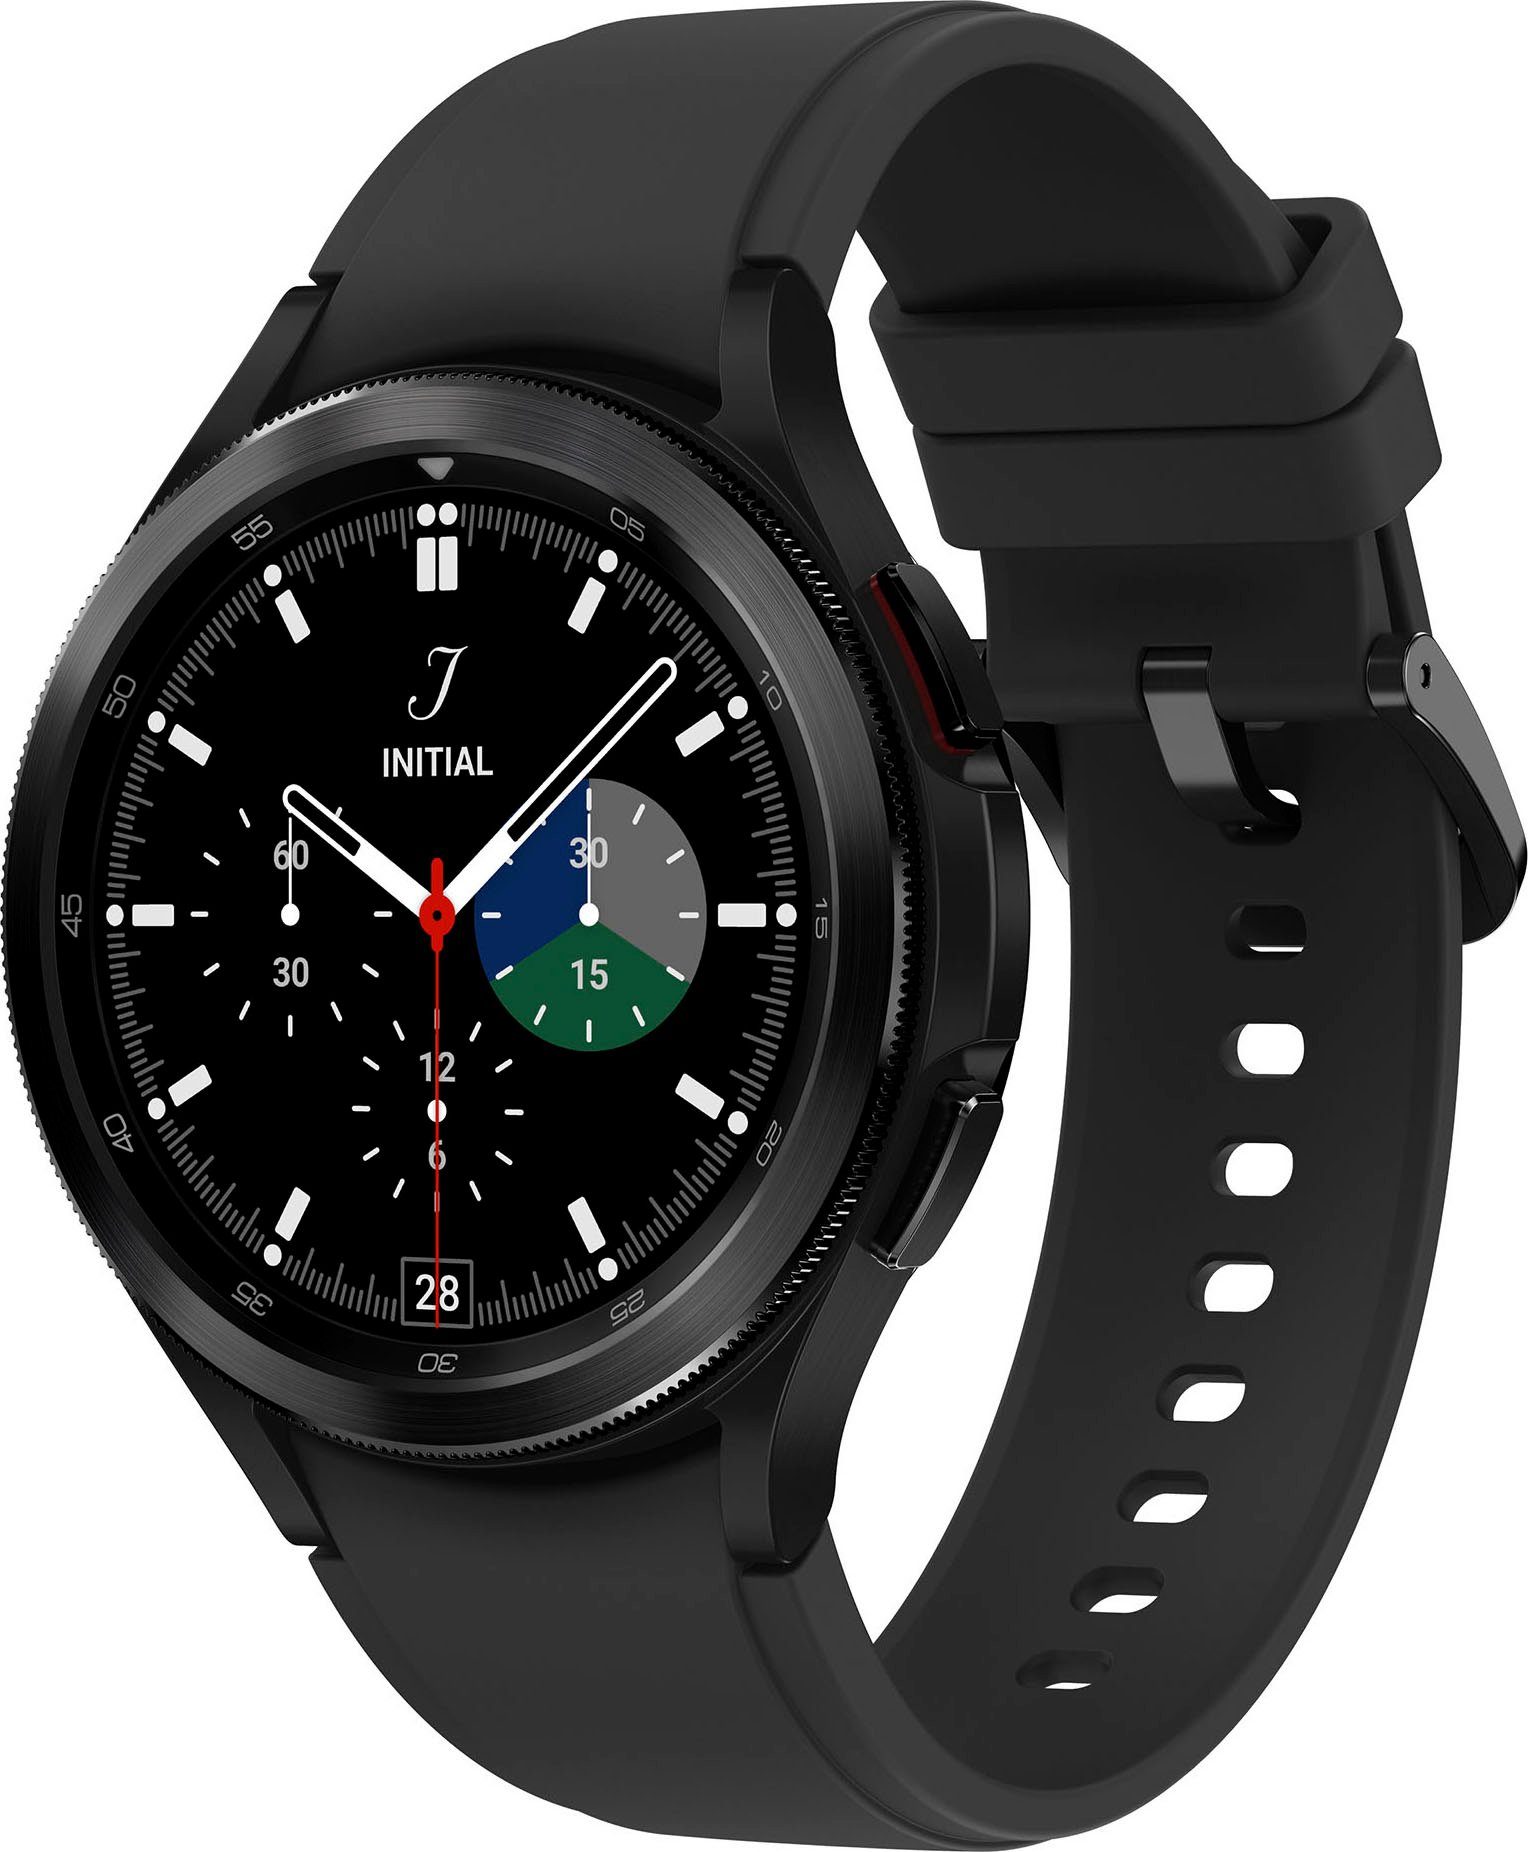 Samsung Galaxy Watch schwarz classic Uhr, cm/1,4 | OS by (3,46 4 Wear Fitness Smartwatch LTE Google), Fitness Tracker, Zoll, Gesundheitsfunktionen schwarz 46mm